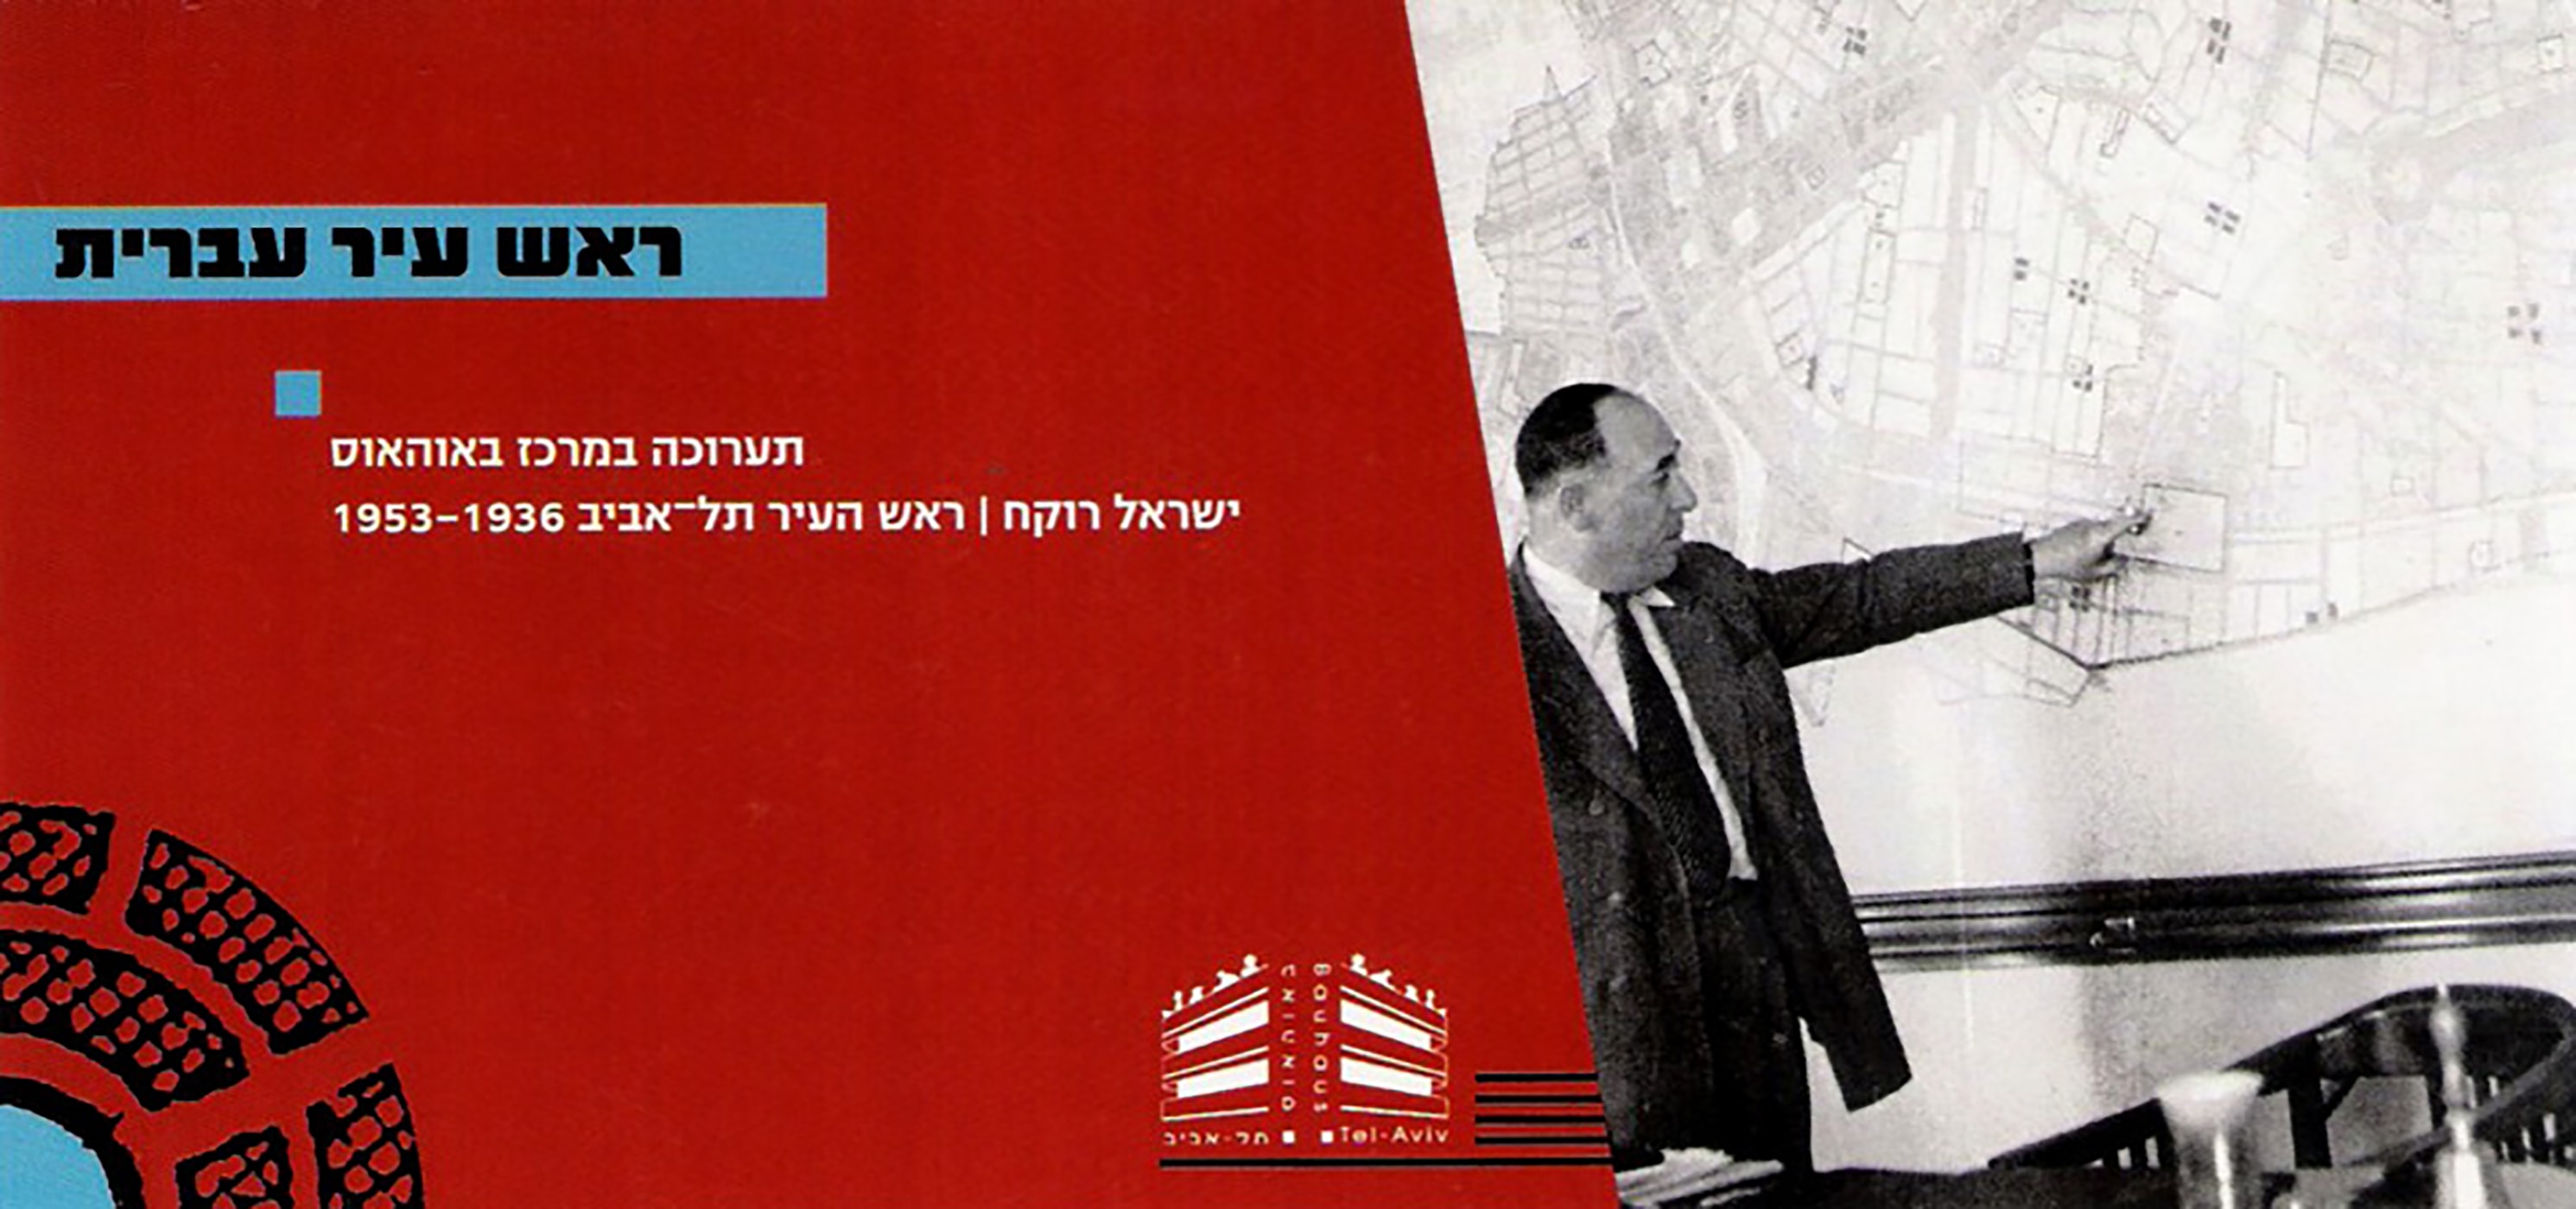 Israel Rokach — Mayor Of Tel Aviv (1936-1953)